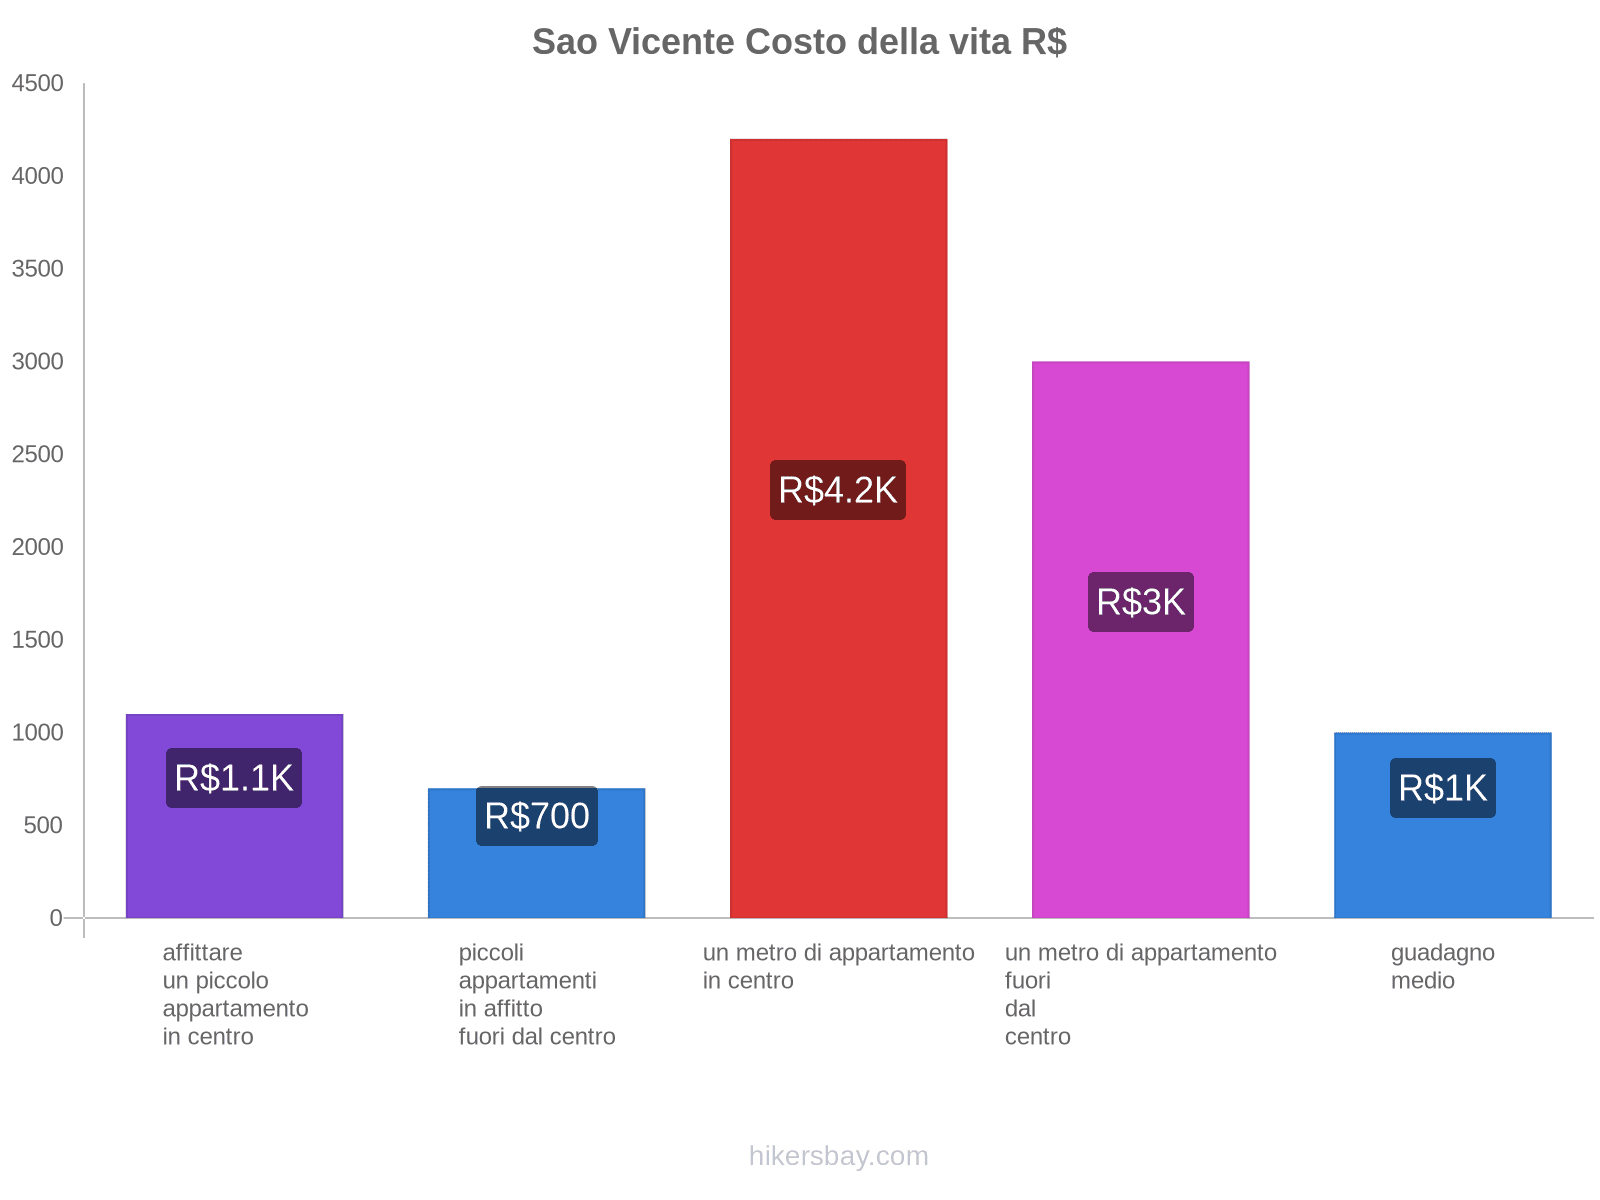 Sao Vicente costo della vita hikersbay.com